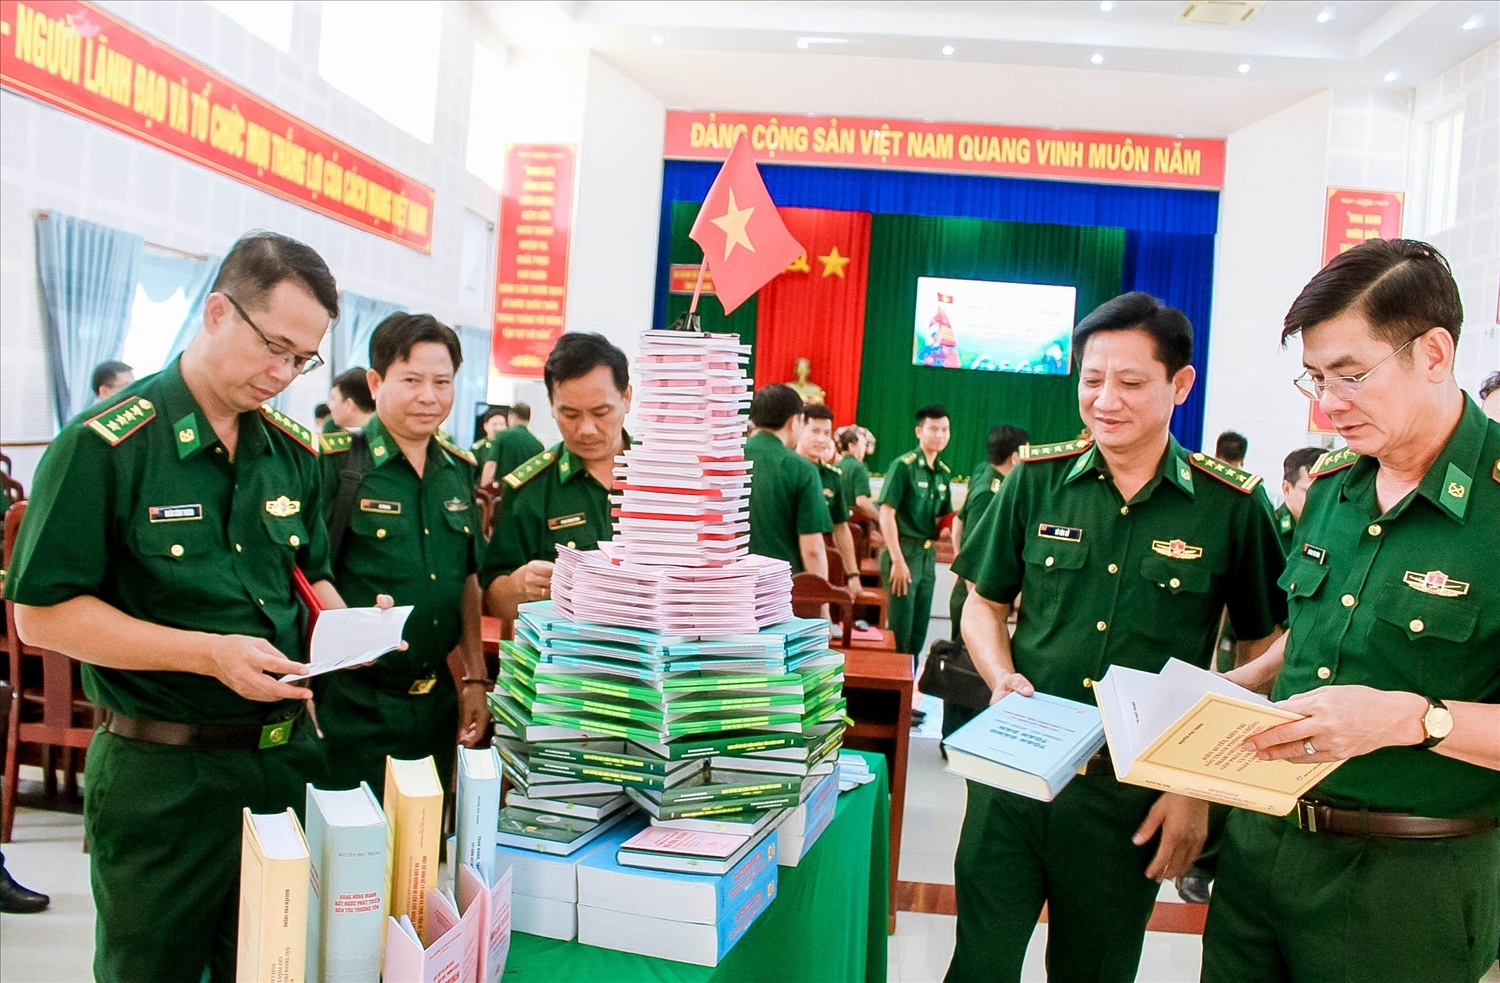 Các đầu sách của Tổng Bí thư Nguyễn Phú Trọng được trưng bày để cán bộ, chiến sĩ tìm hiểu và nghiên cứu 